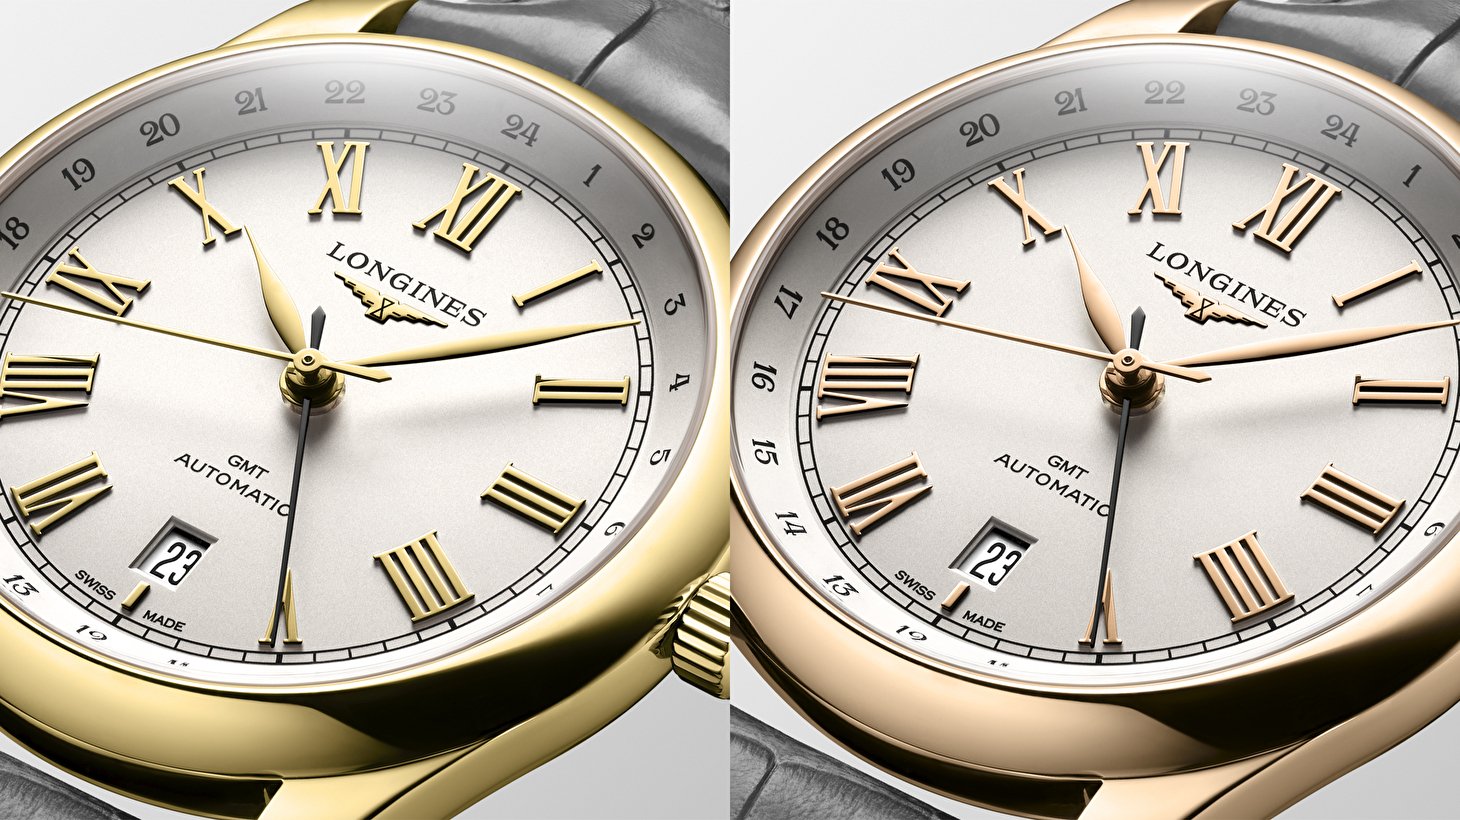 Longines Master Collection - новые эксклюзивные модели GMT в золотом корпусе